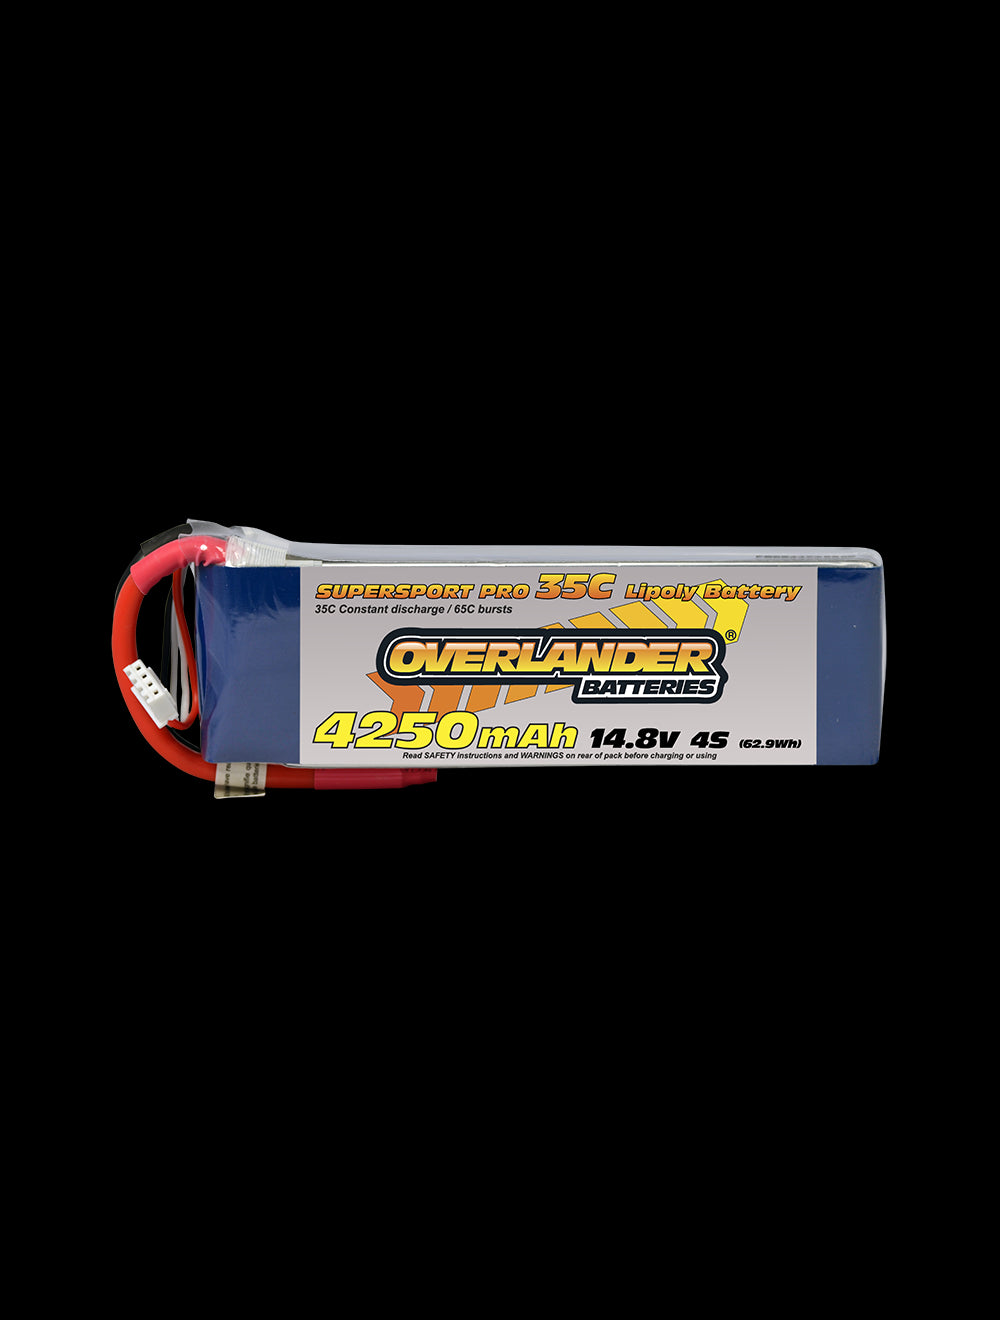 Overlander 4250mAh 14.8V 4S 35C Supersport Pro LiPo Battery - Deans Connector 2476